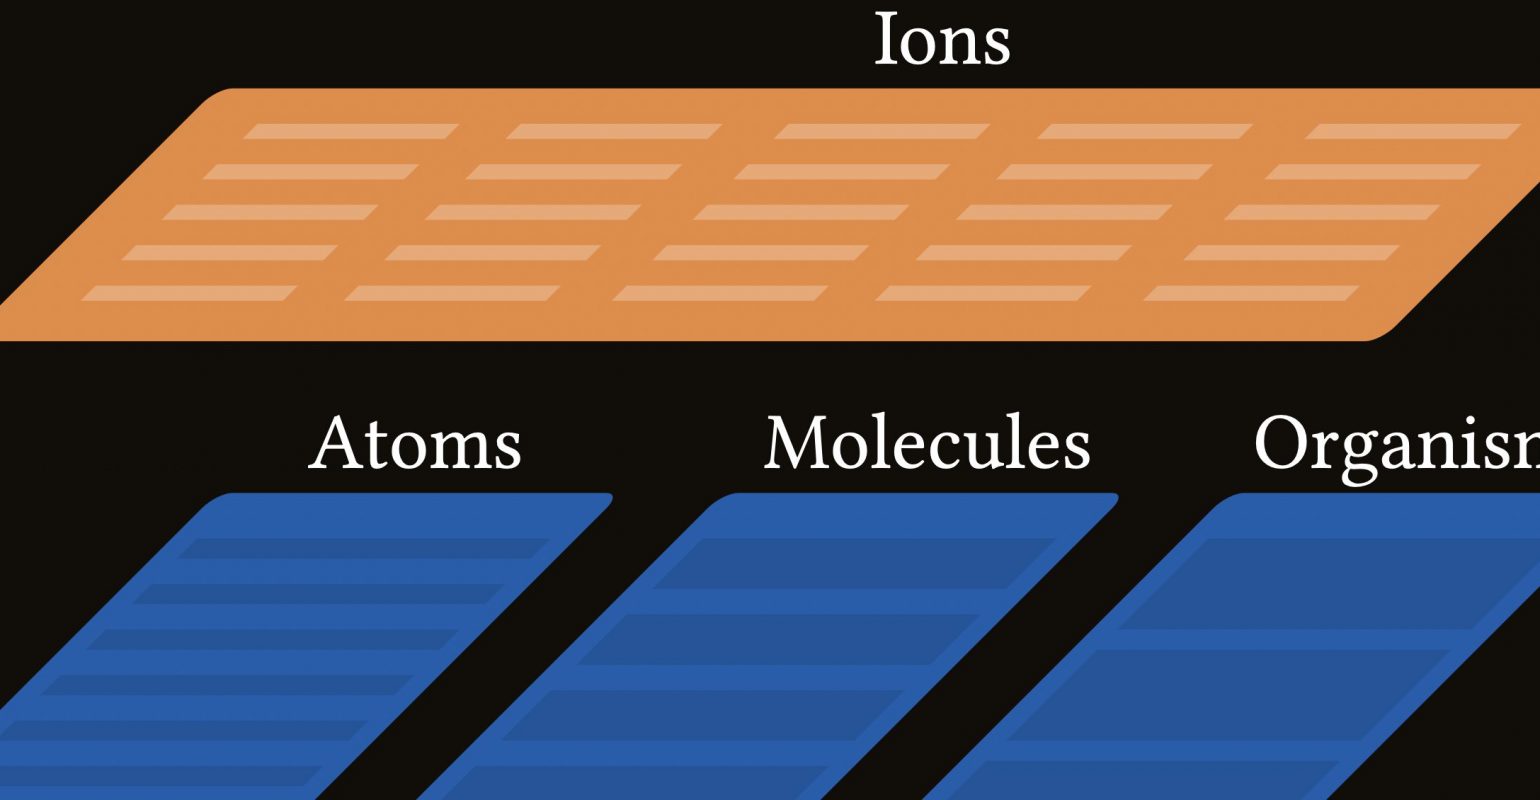 Die Abbildung zeigt, dass das Ions über den Ebenen Atom, Molekül und Organismus liegt.